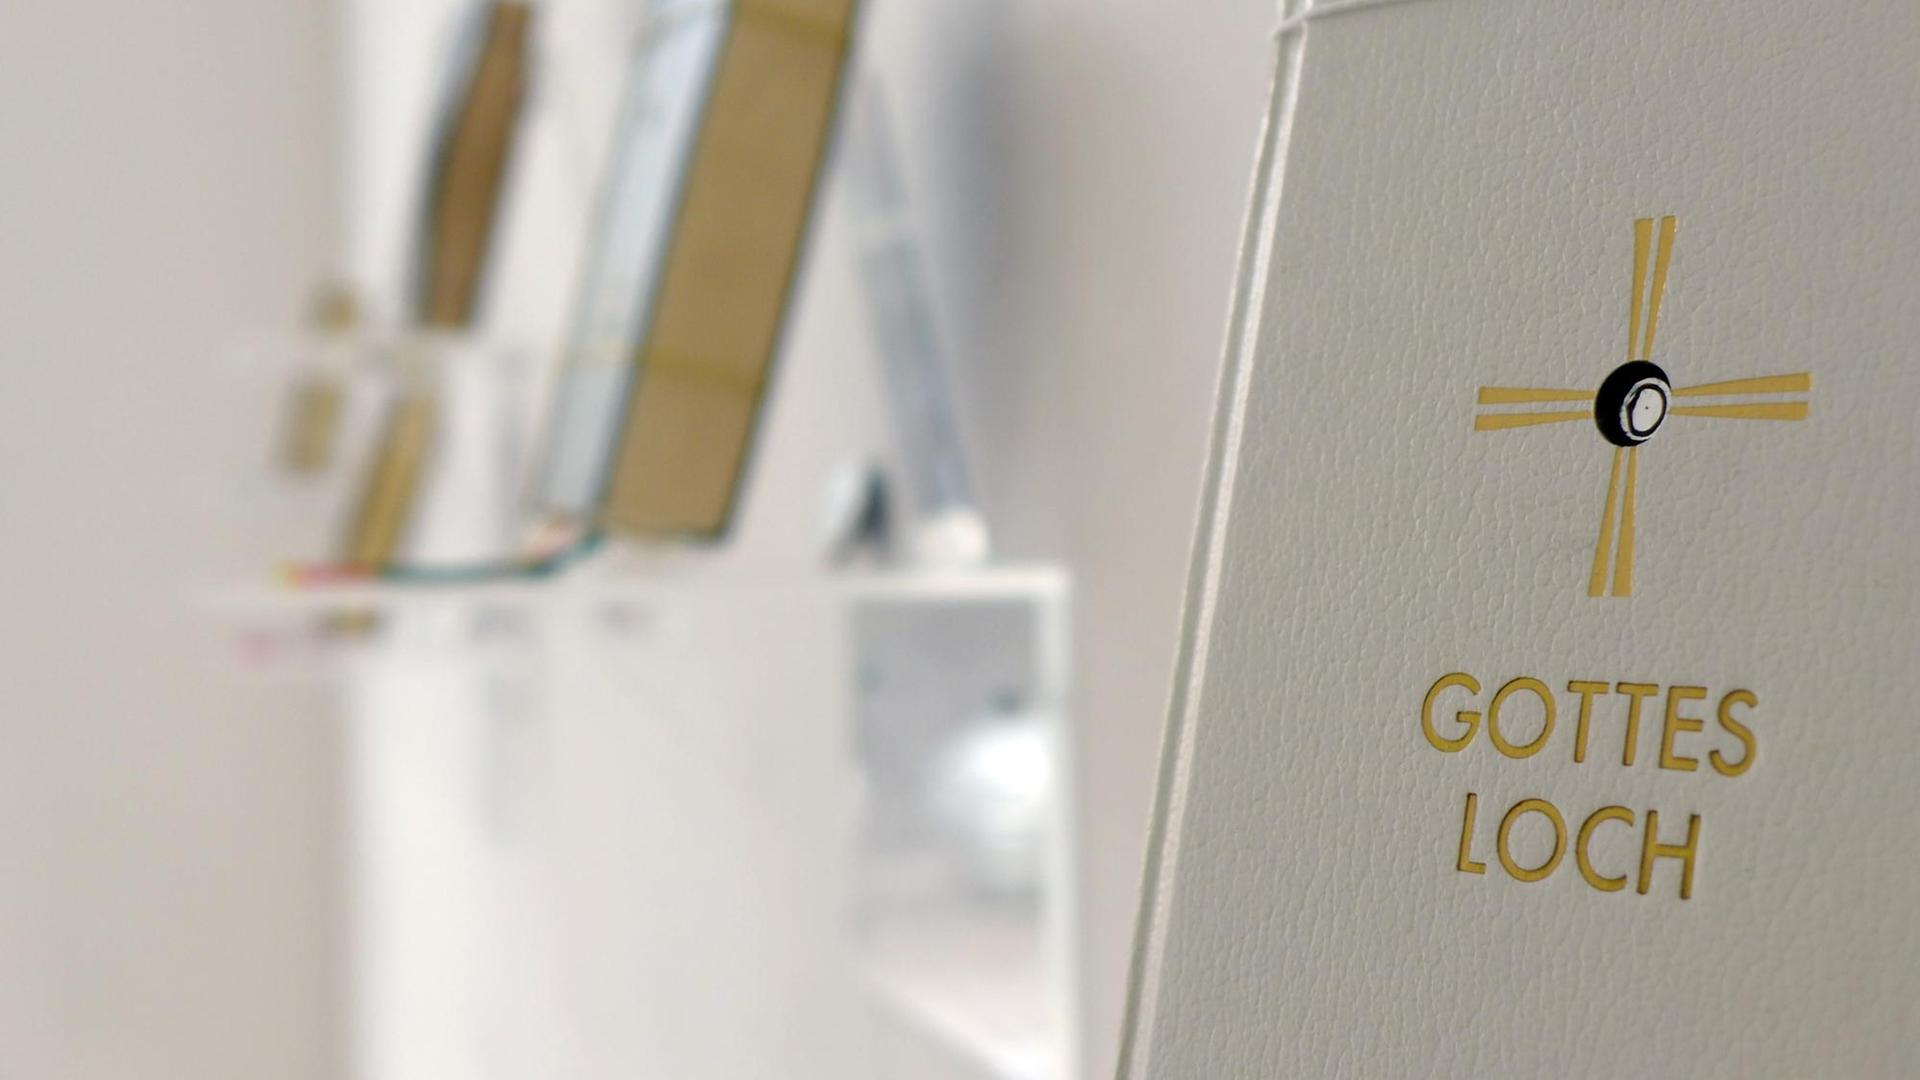 Schrägansicht auf die Installation "Gottesloch" von Georgia Krawiec. Zu sehen ist ein hellgraues Liederbuch mit einem goldenen Kreuz auf dem Cover, in dessen Mitte ein Loch ist. Darunter der Titel "Gottesloch".